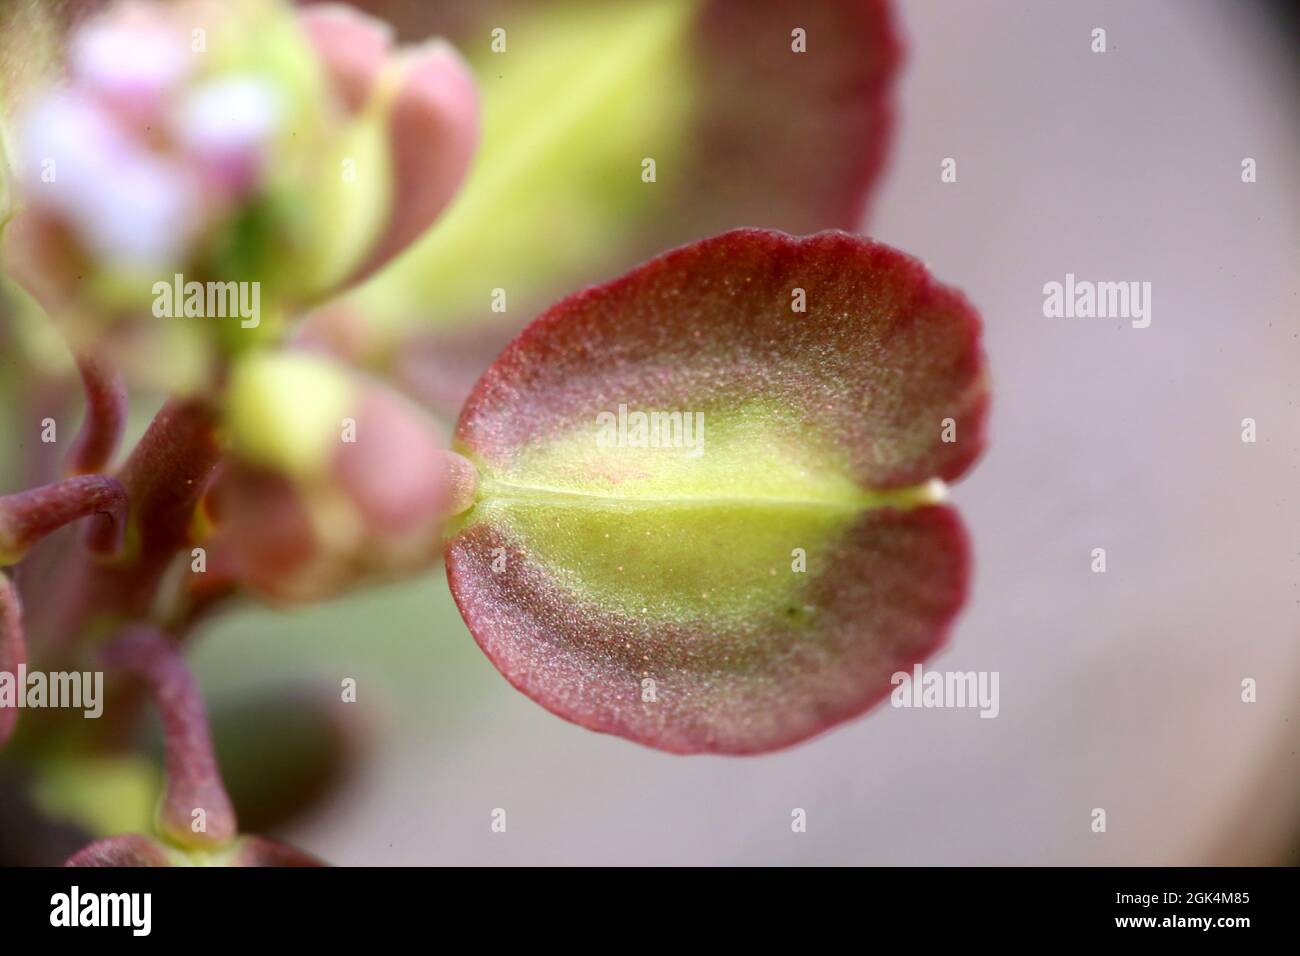 Aethionema saxatile, Brassicaceae. Wildpflanze im Frühjahr geschossen. Stockfoto